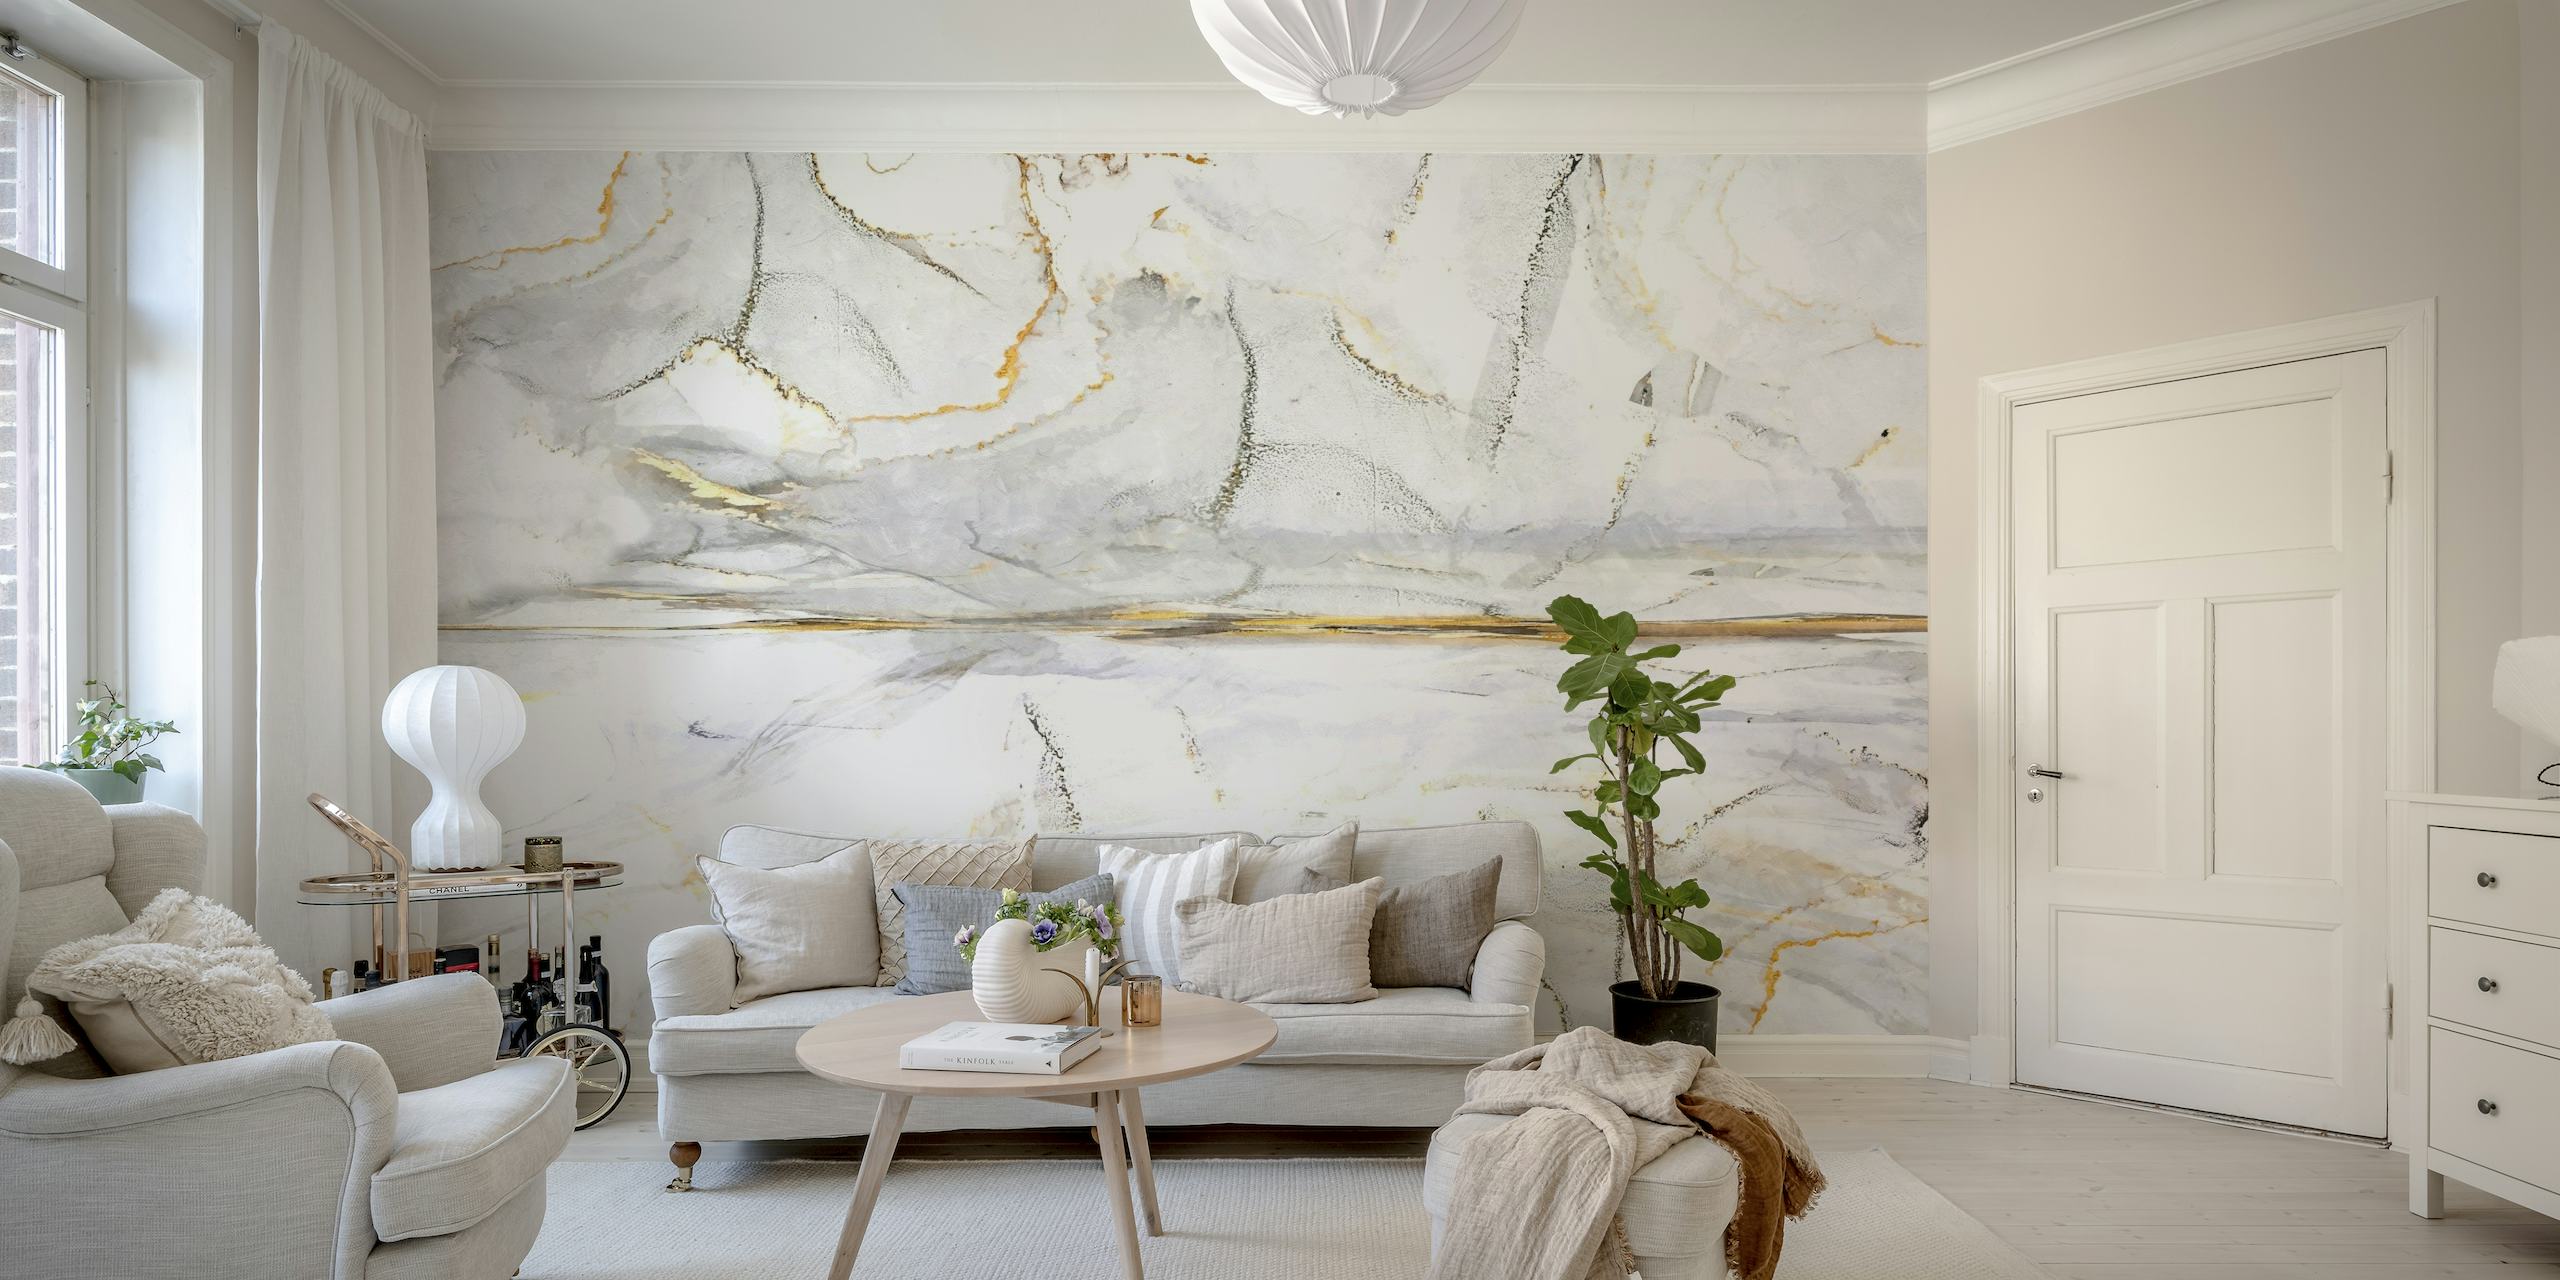 Väggmålningar 19 med marmorstruktur med vita, gråa och guldmönster